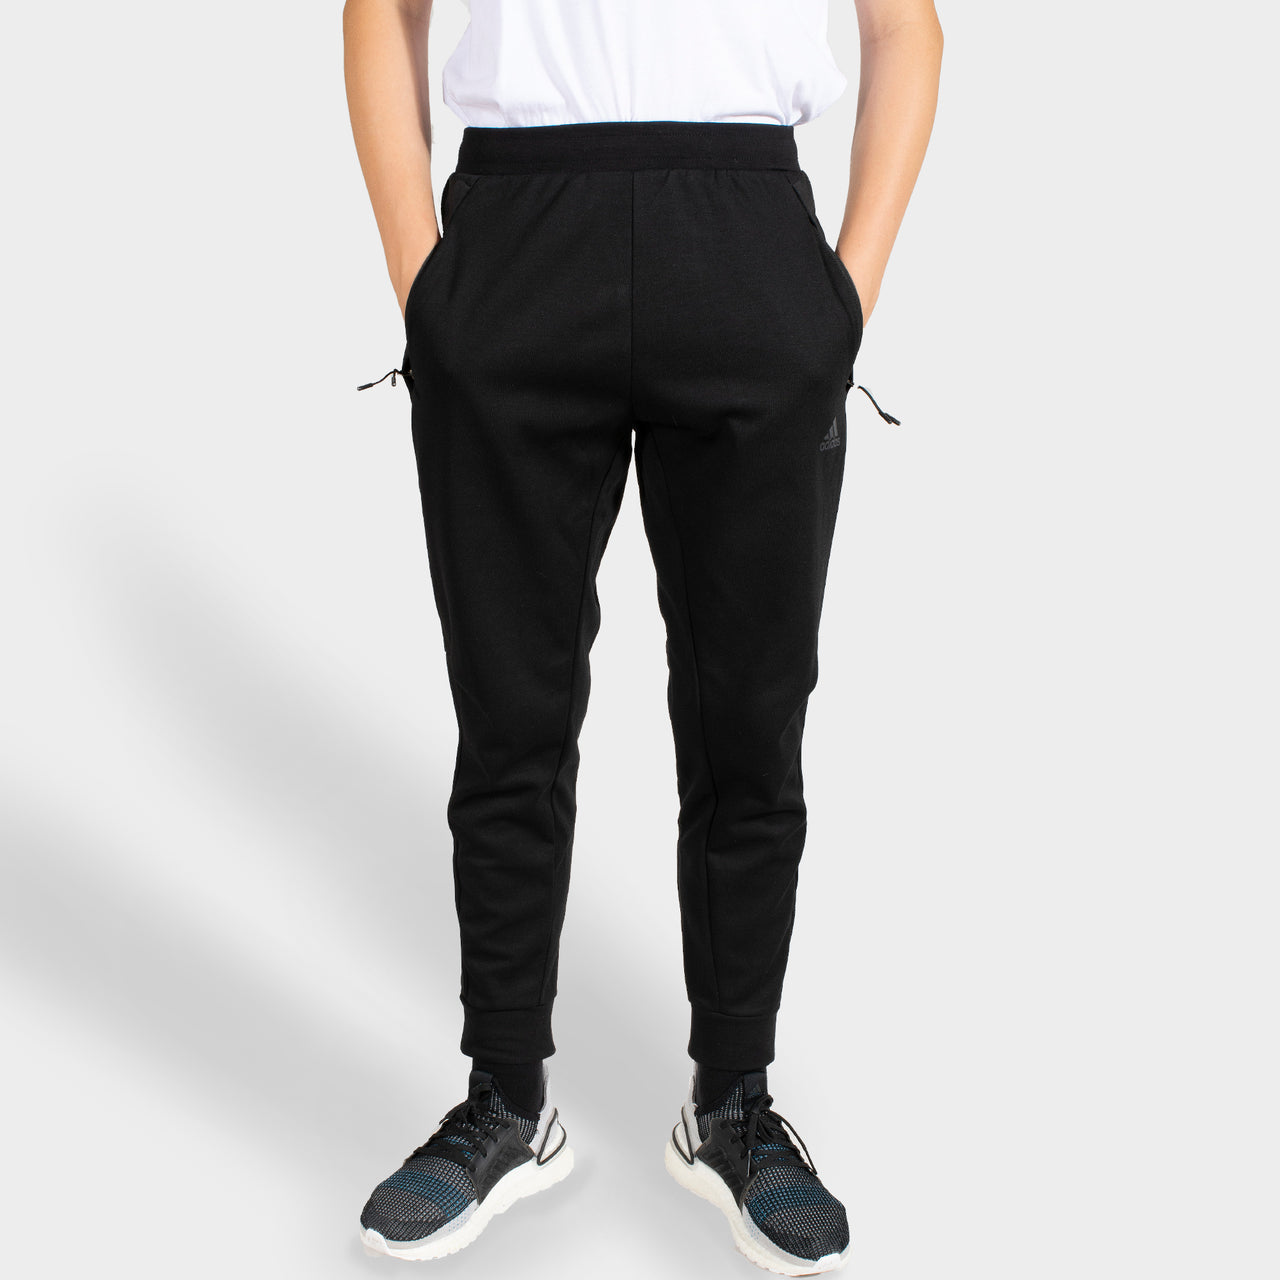 Pantalon Sportswear homme noir